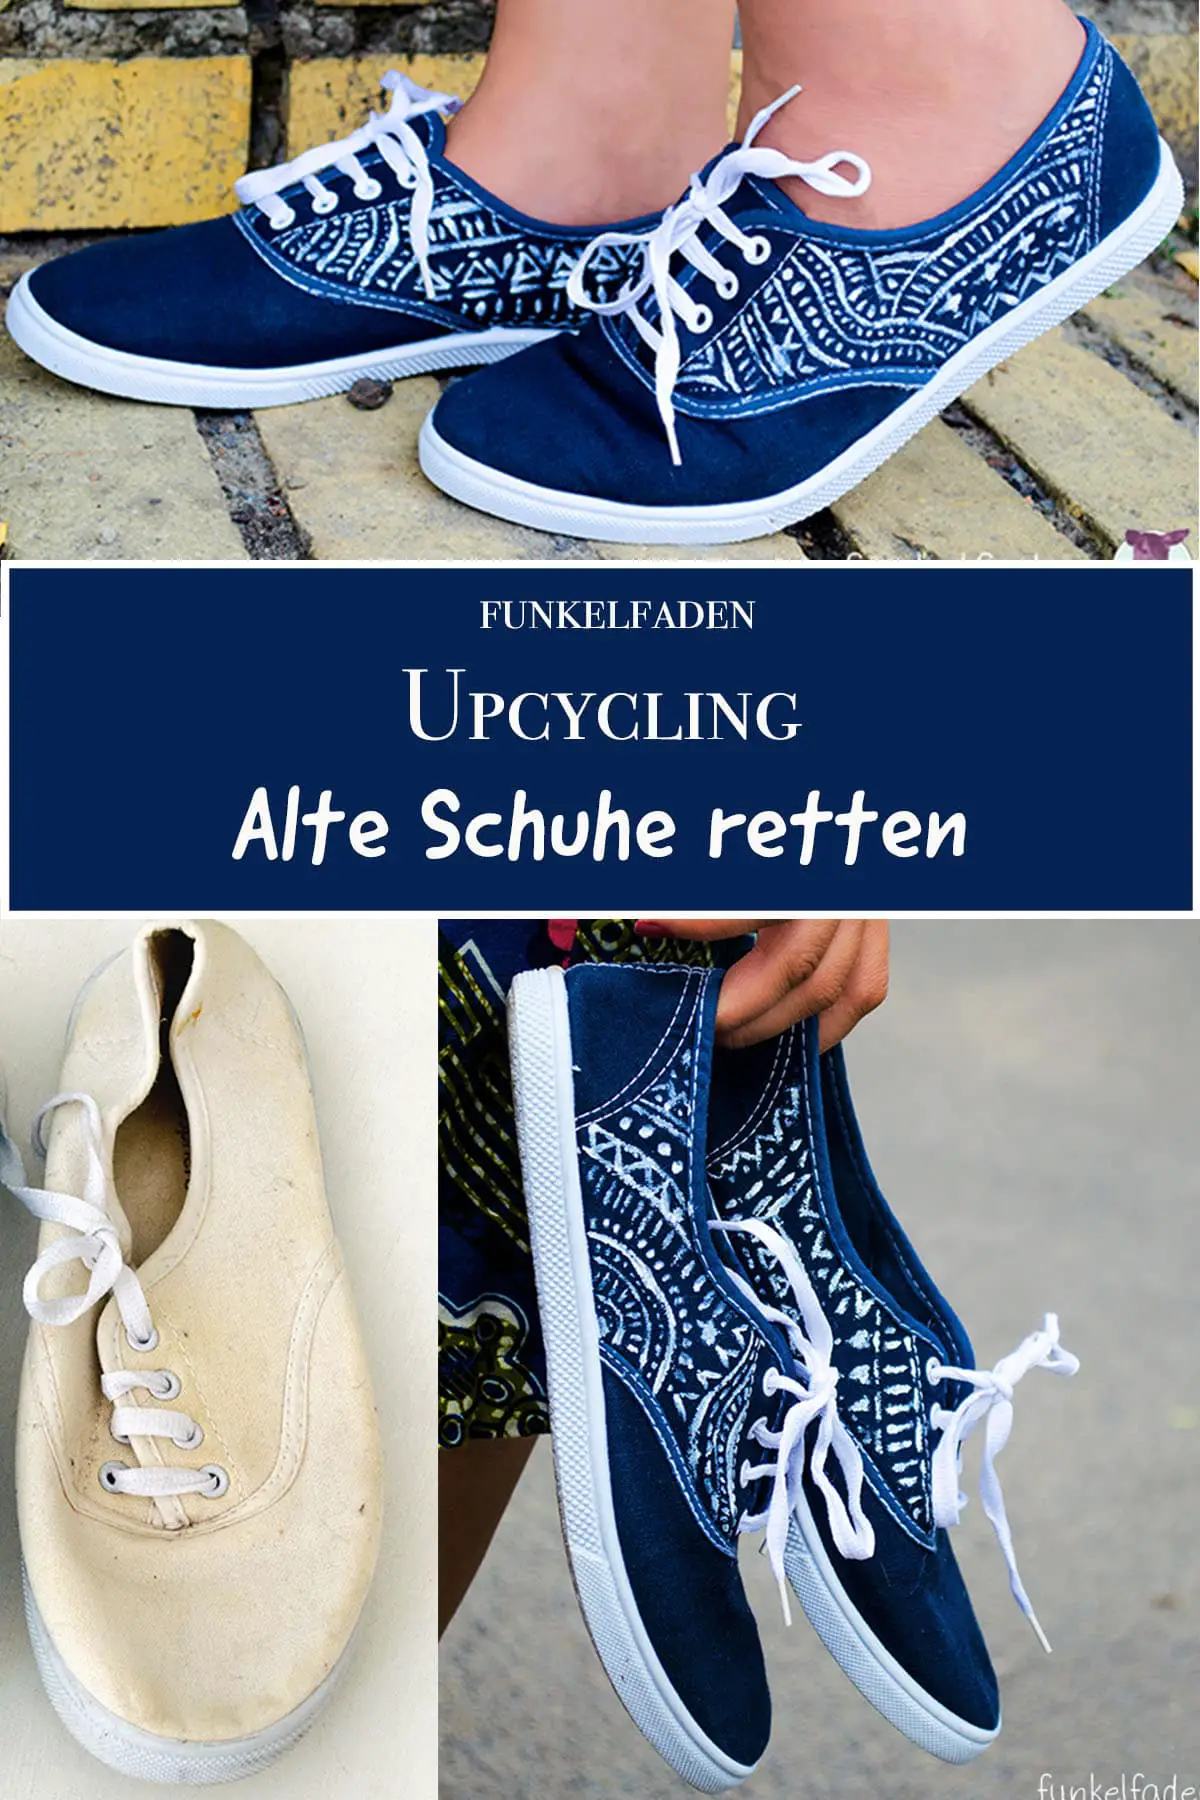 Upcycling Alte Schuhe färben und bemalen